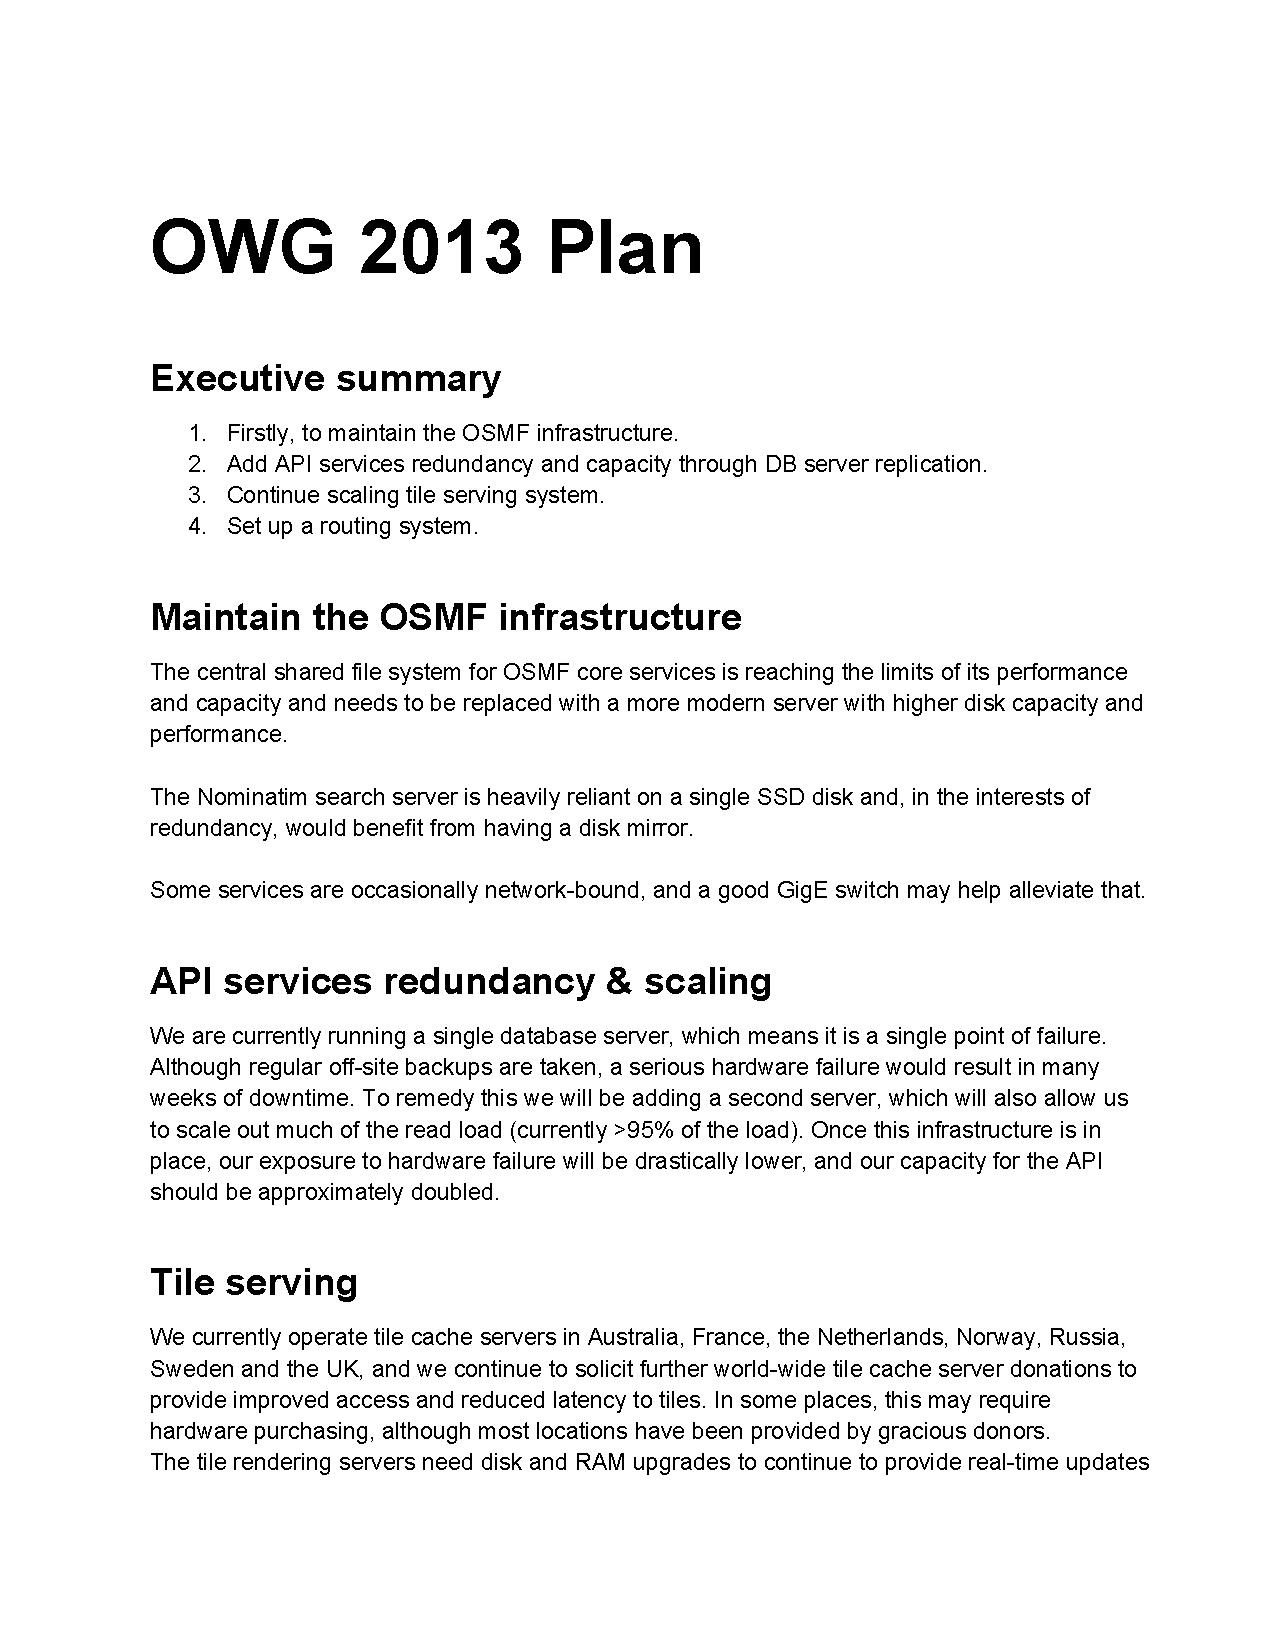 OWG2013Plan.pdf